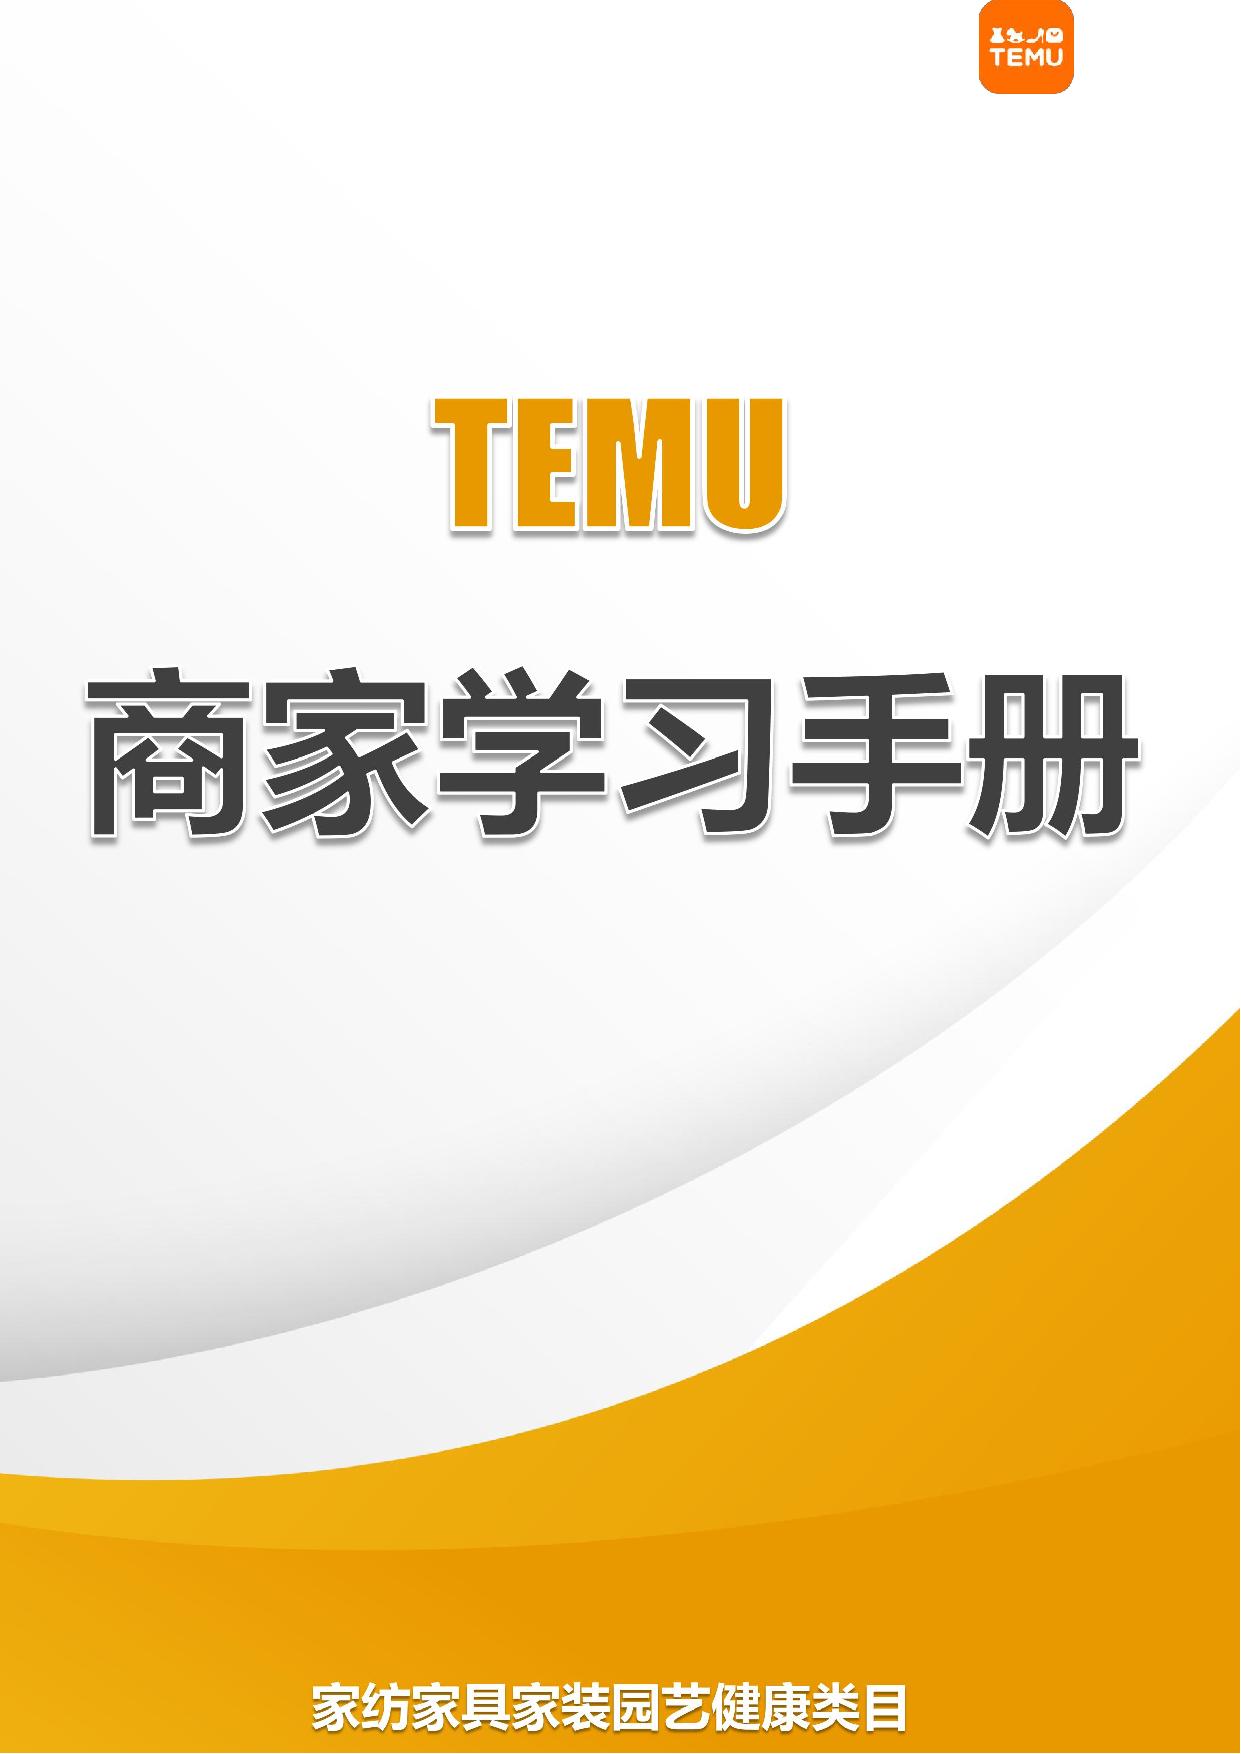 TEMU平台 TEMU商家学习手册